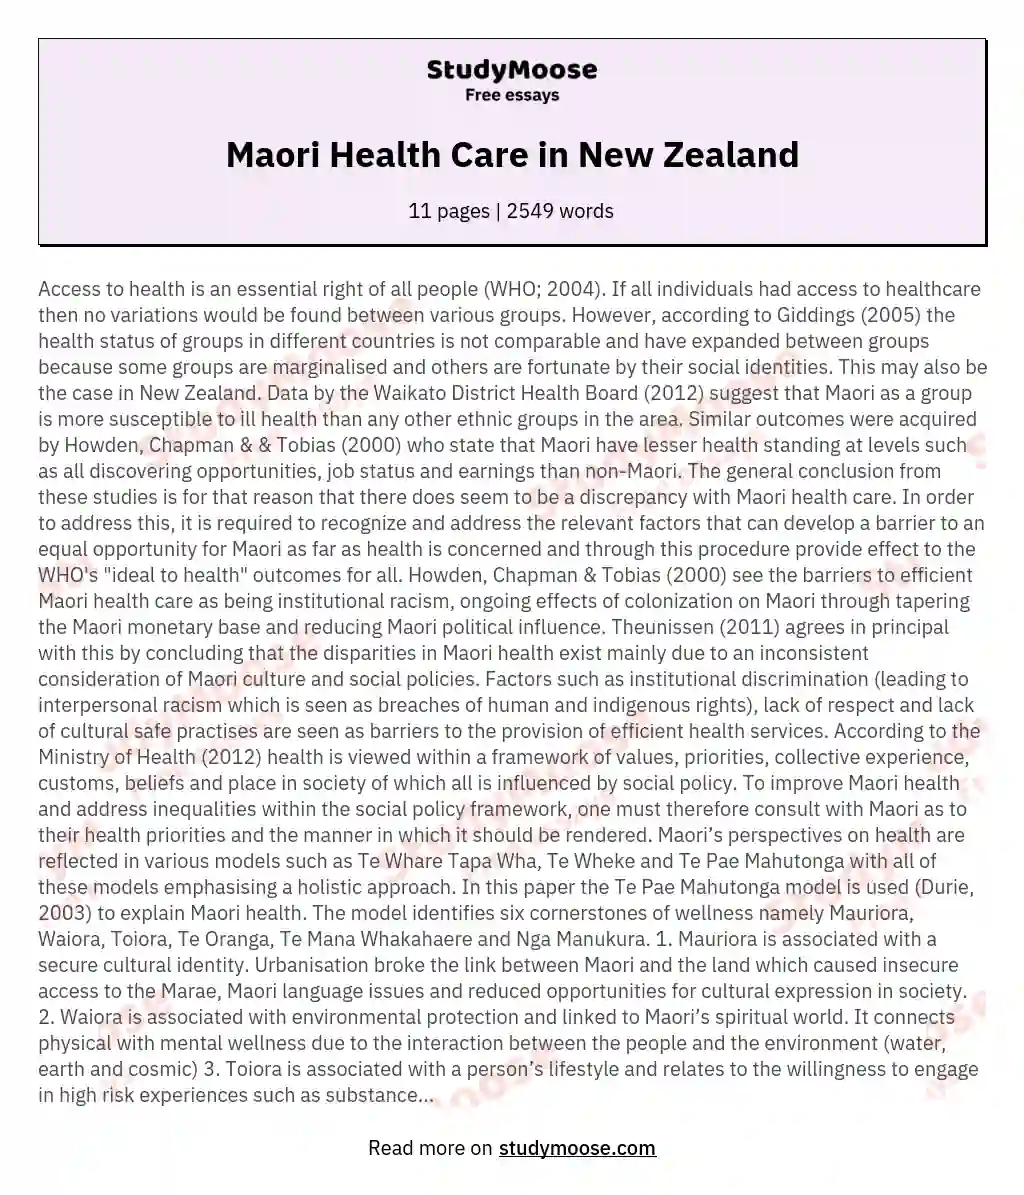 Maori Health Care in New Zealand essay